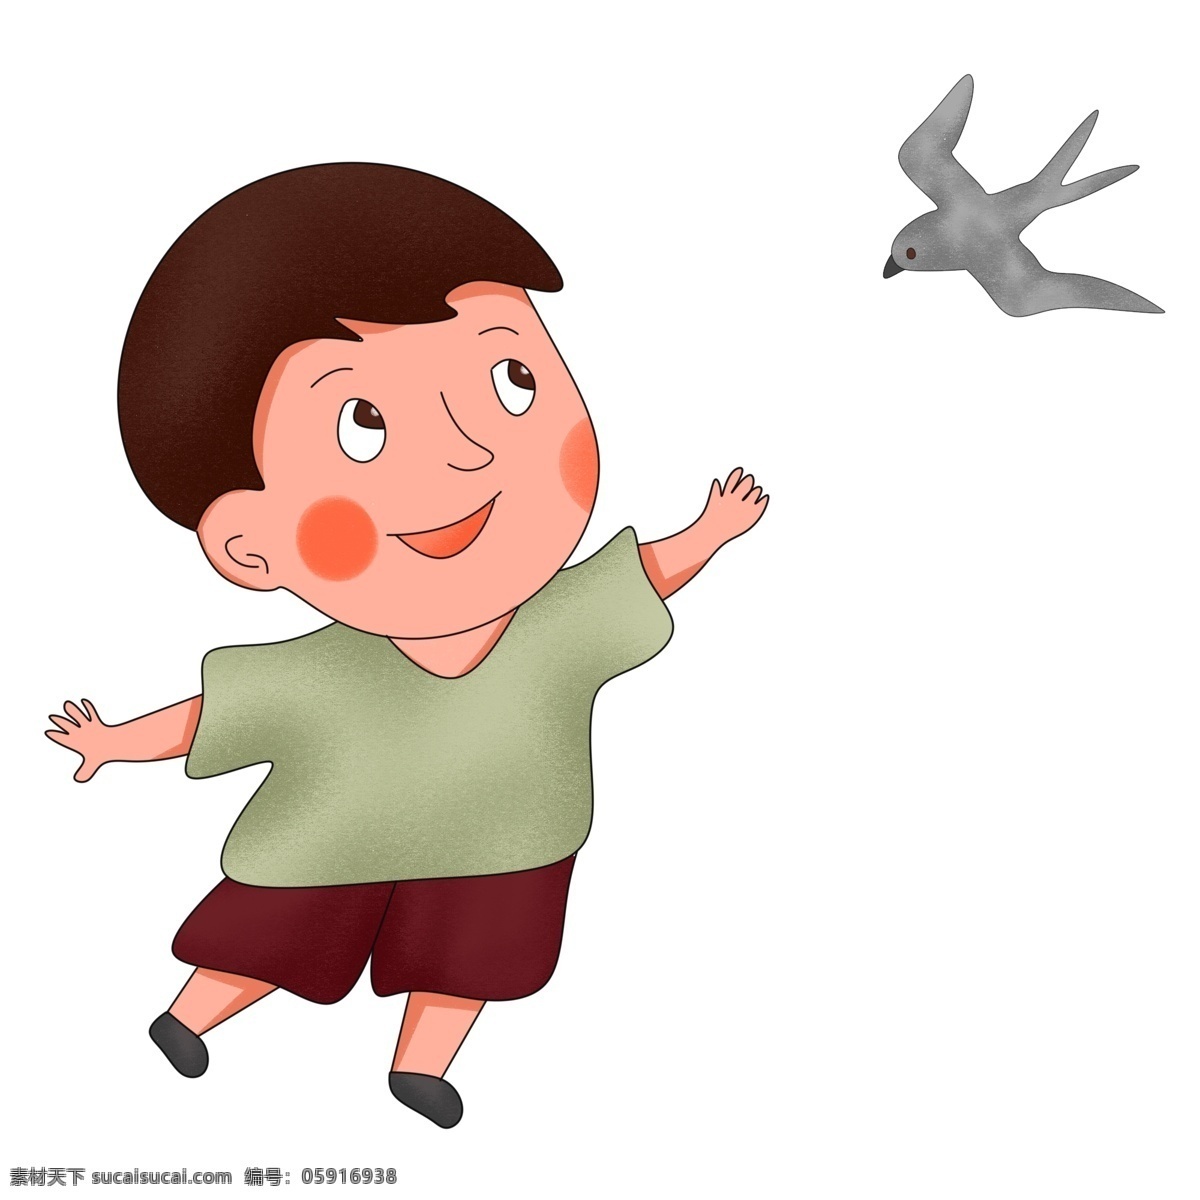 小燕子 可爱 小孩 小孩子 儿童 儿童插画 伸手的小孩 飞舞的燕子 小燕子和小孩 手绘插画